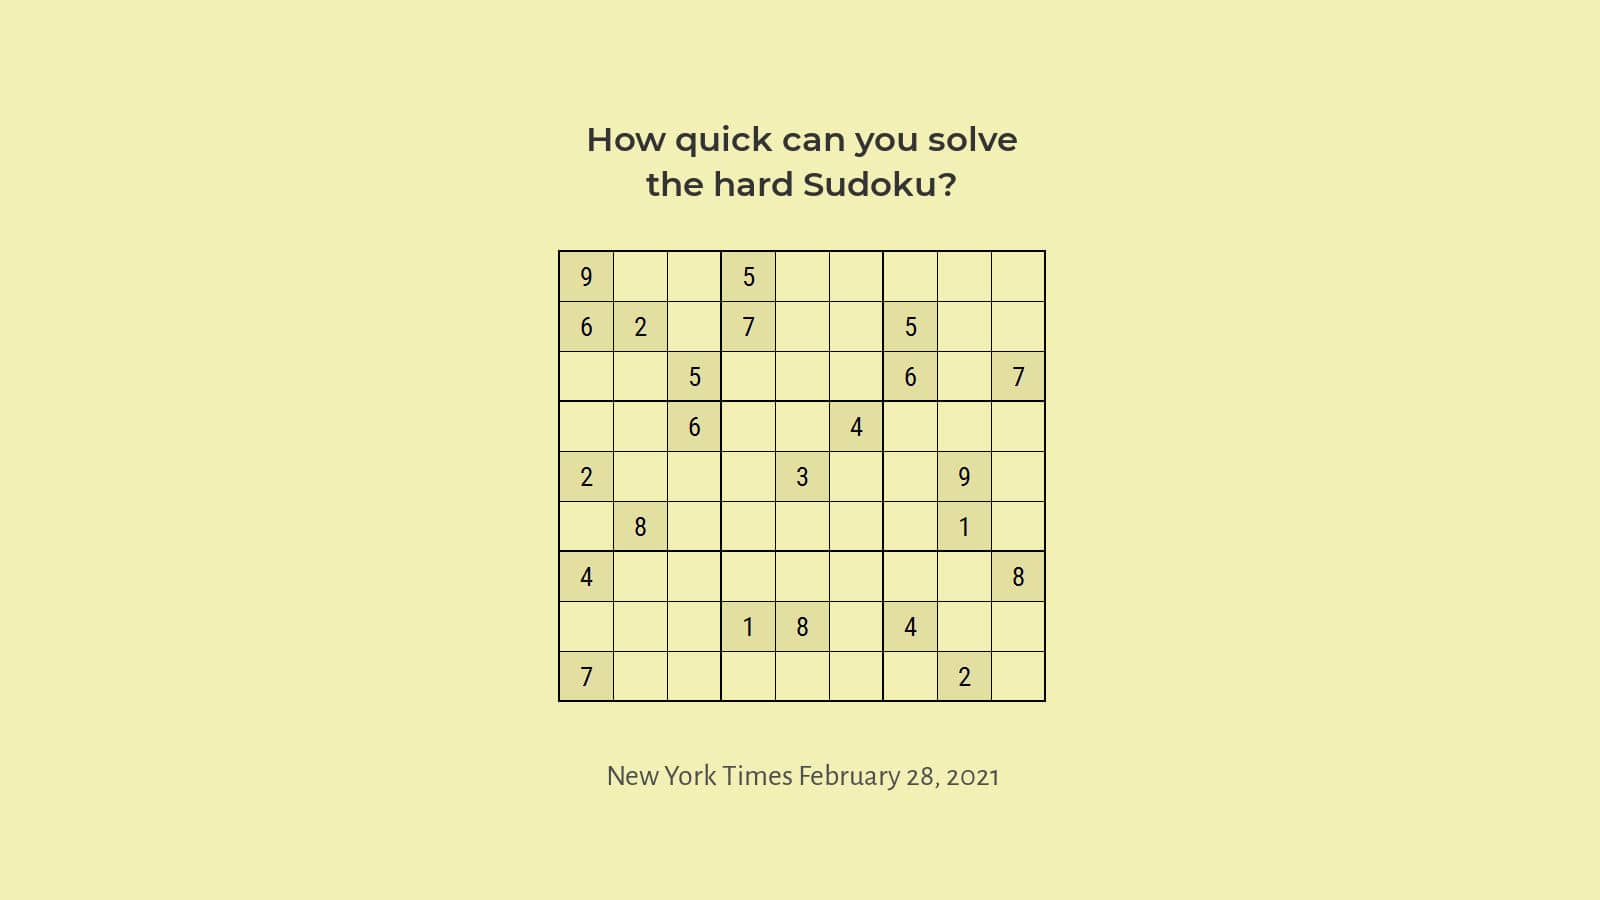 How to Solve NYT Sudoku hard February 28, 2021